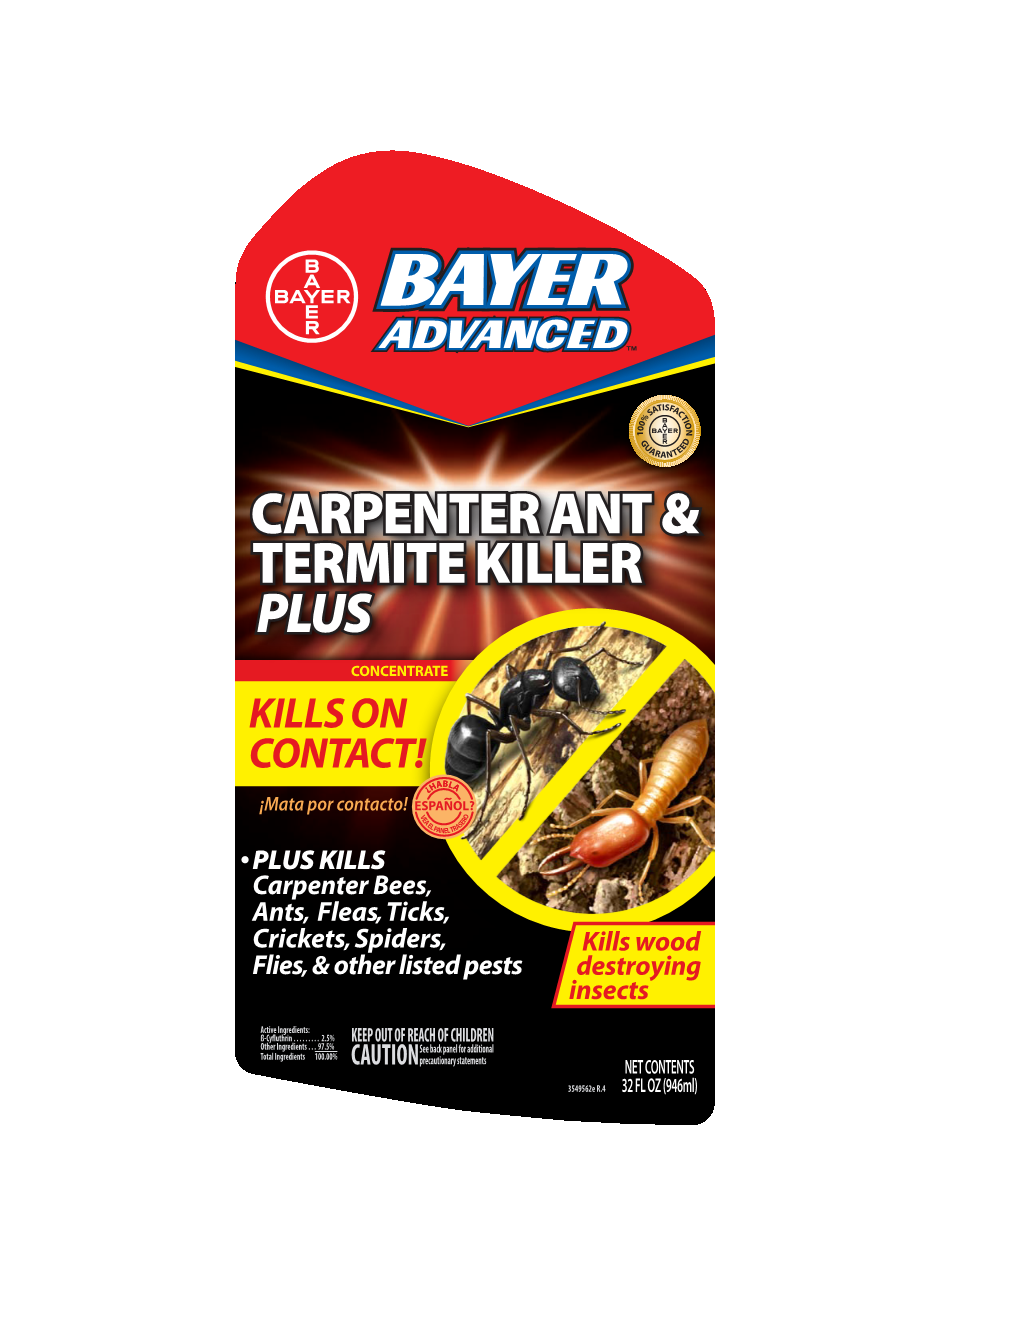 Carpenter Ant & Termite Killer